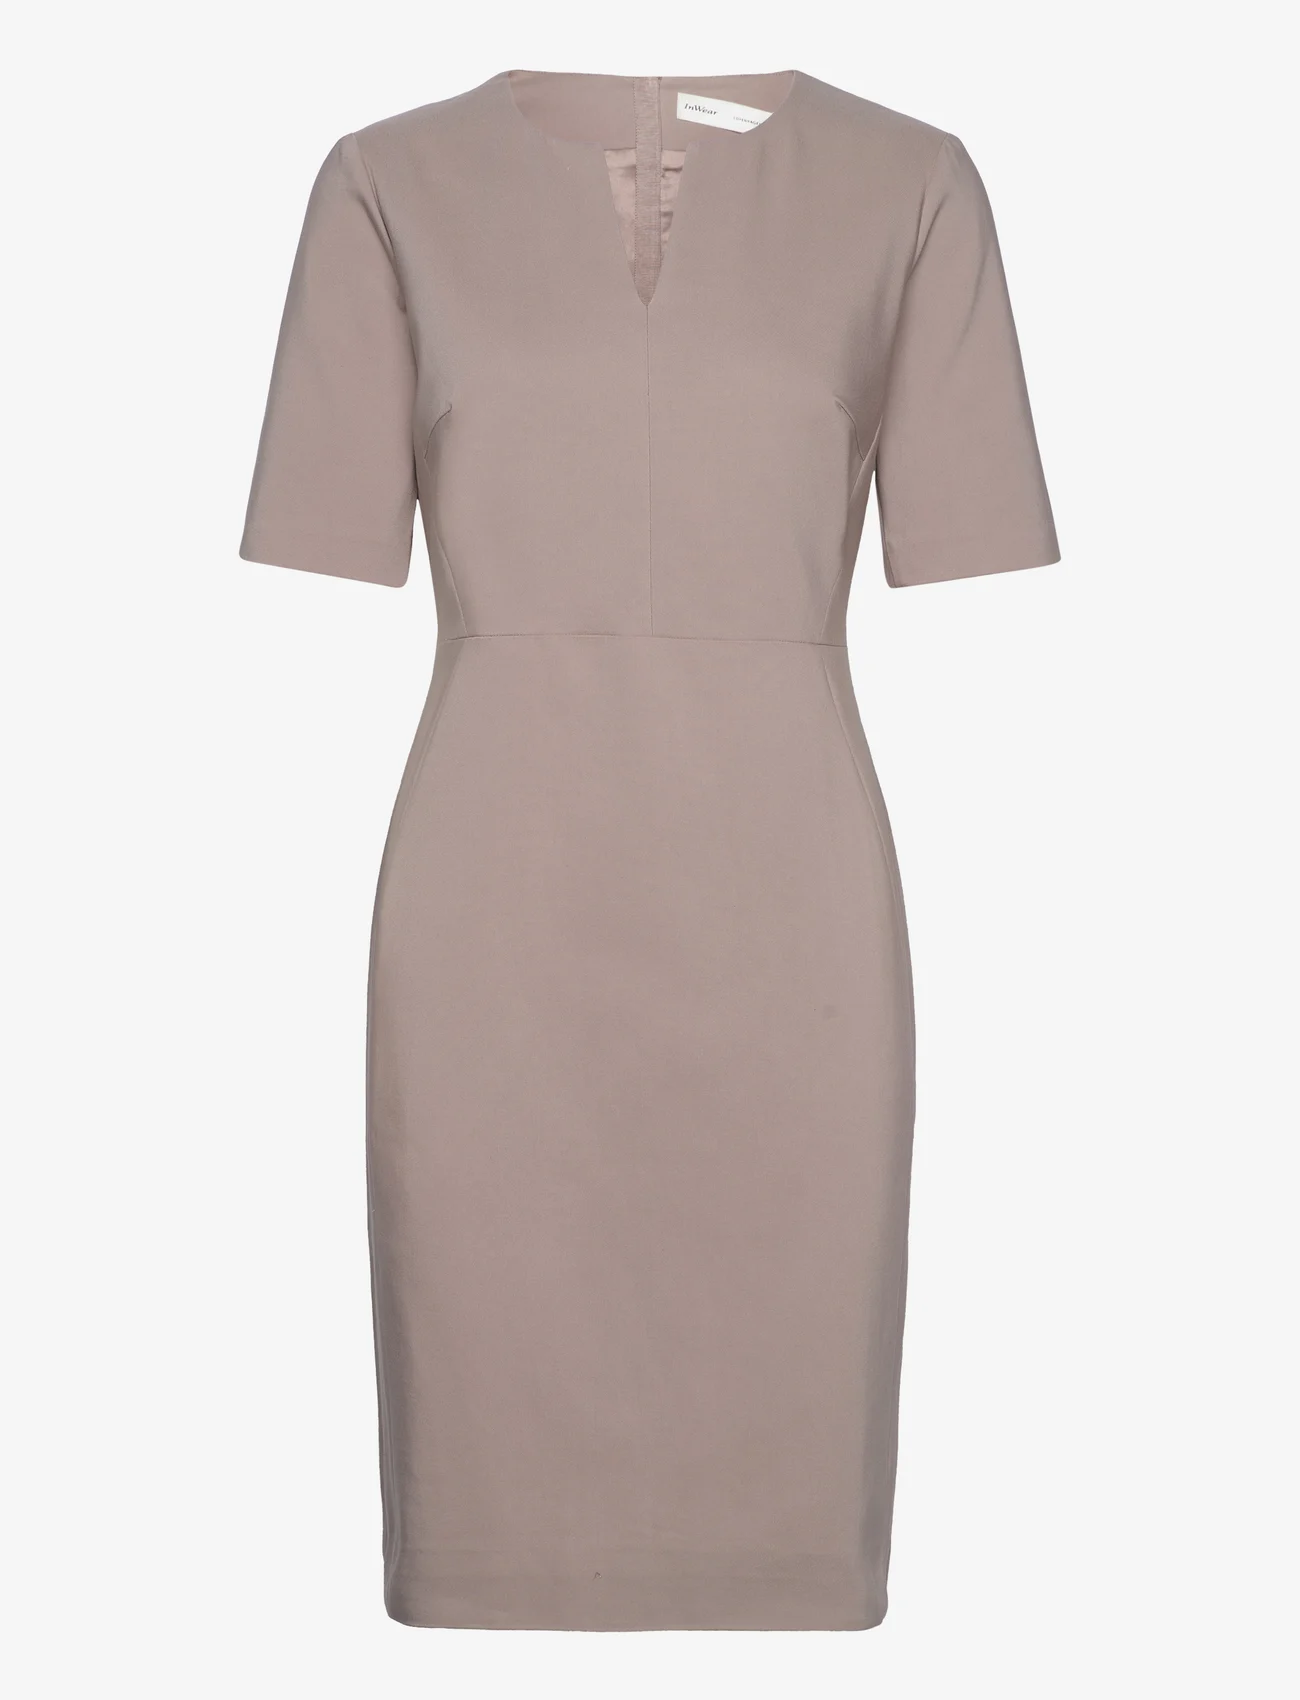 InWear - Zella Dress - feestelijke kleding voor outlet-prijzen - mocha grey - 0